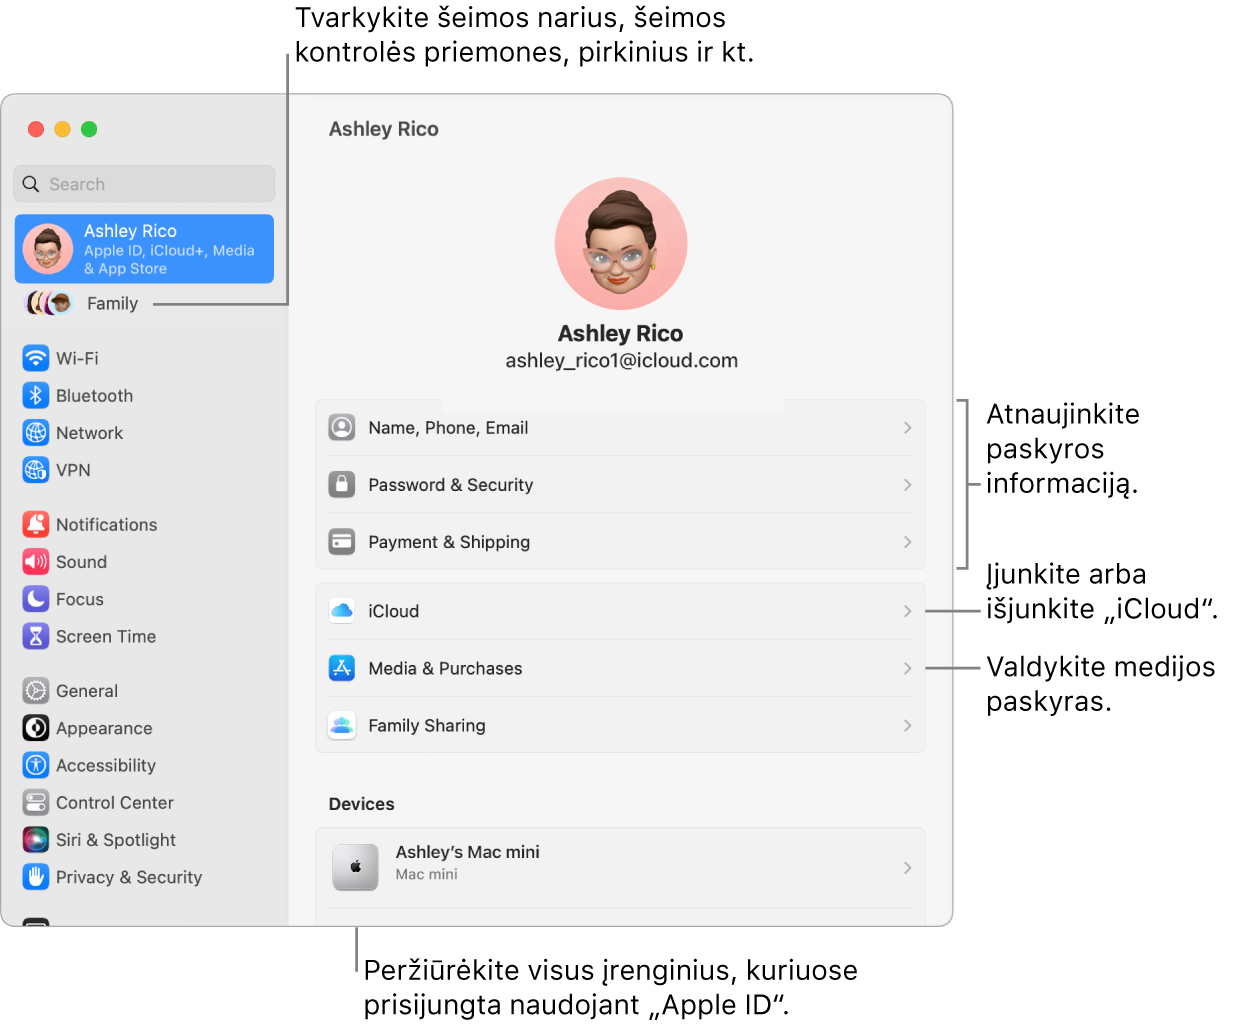 Skiltyje „System Settings“ pateikiami „Apple ID“ nustatymai su šaukiniais, skirtais atnaujinti paskyros informaciją, įjungti arba išjungti „iCloud“ funkcijas, tvarkyti medijos paskyras, ir „Family“, kur galite tvarkyti šeimos narius, tėvų kontrolę, pirkinius ir kt.